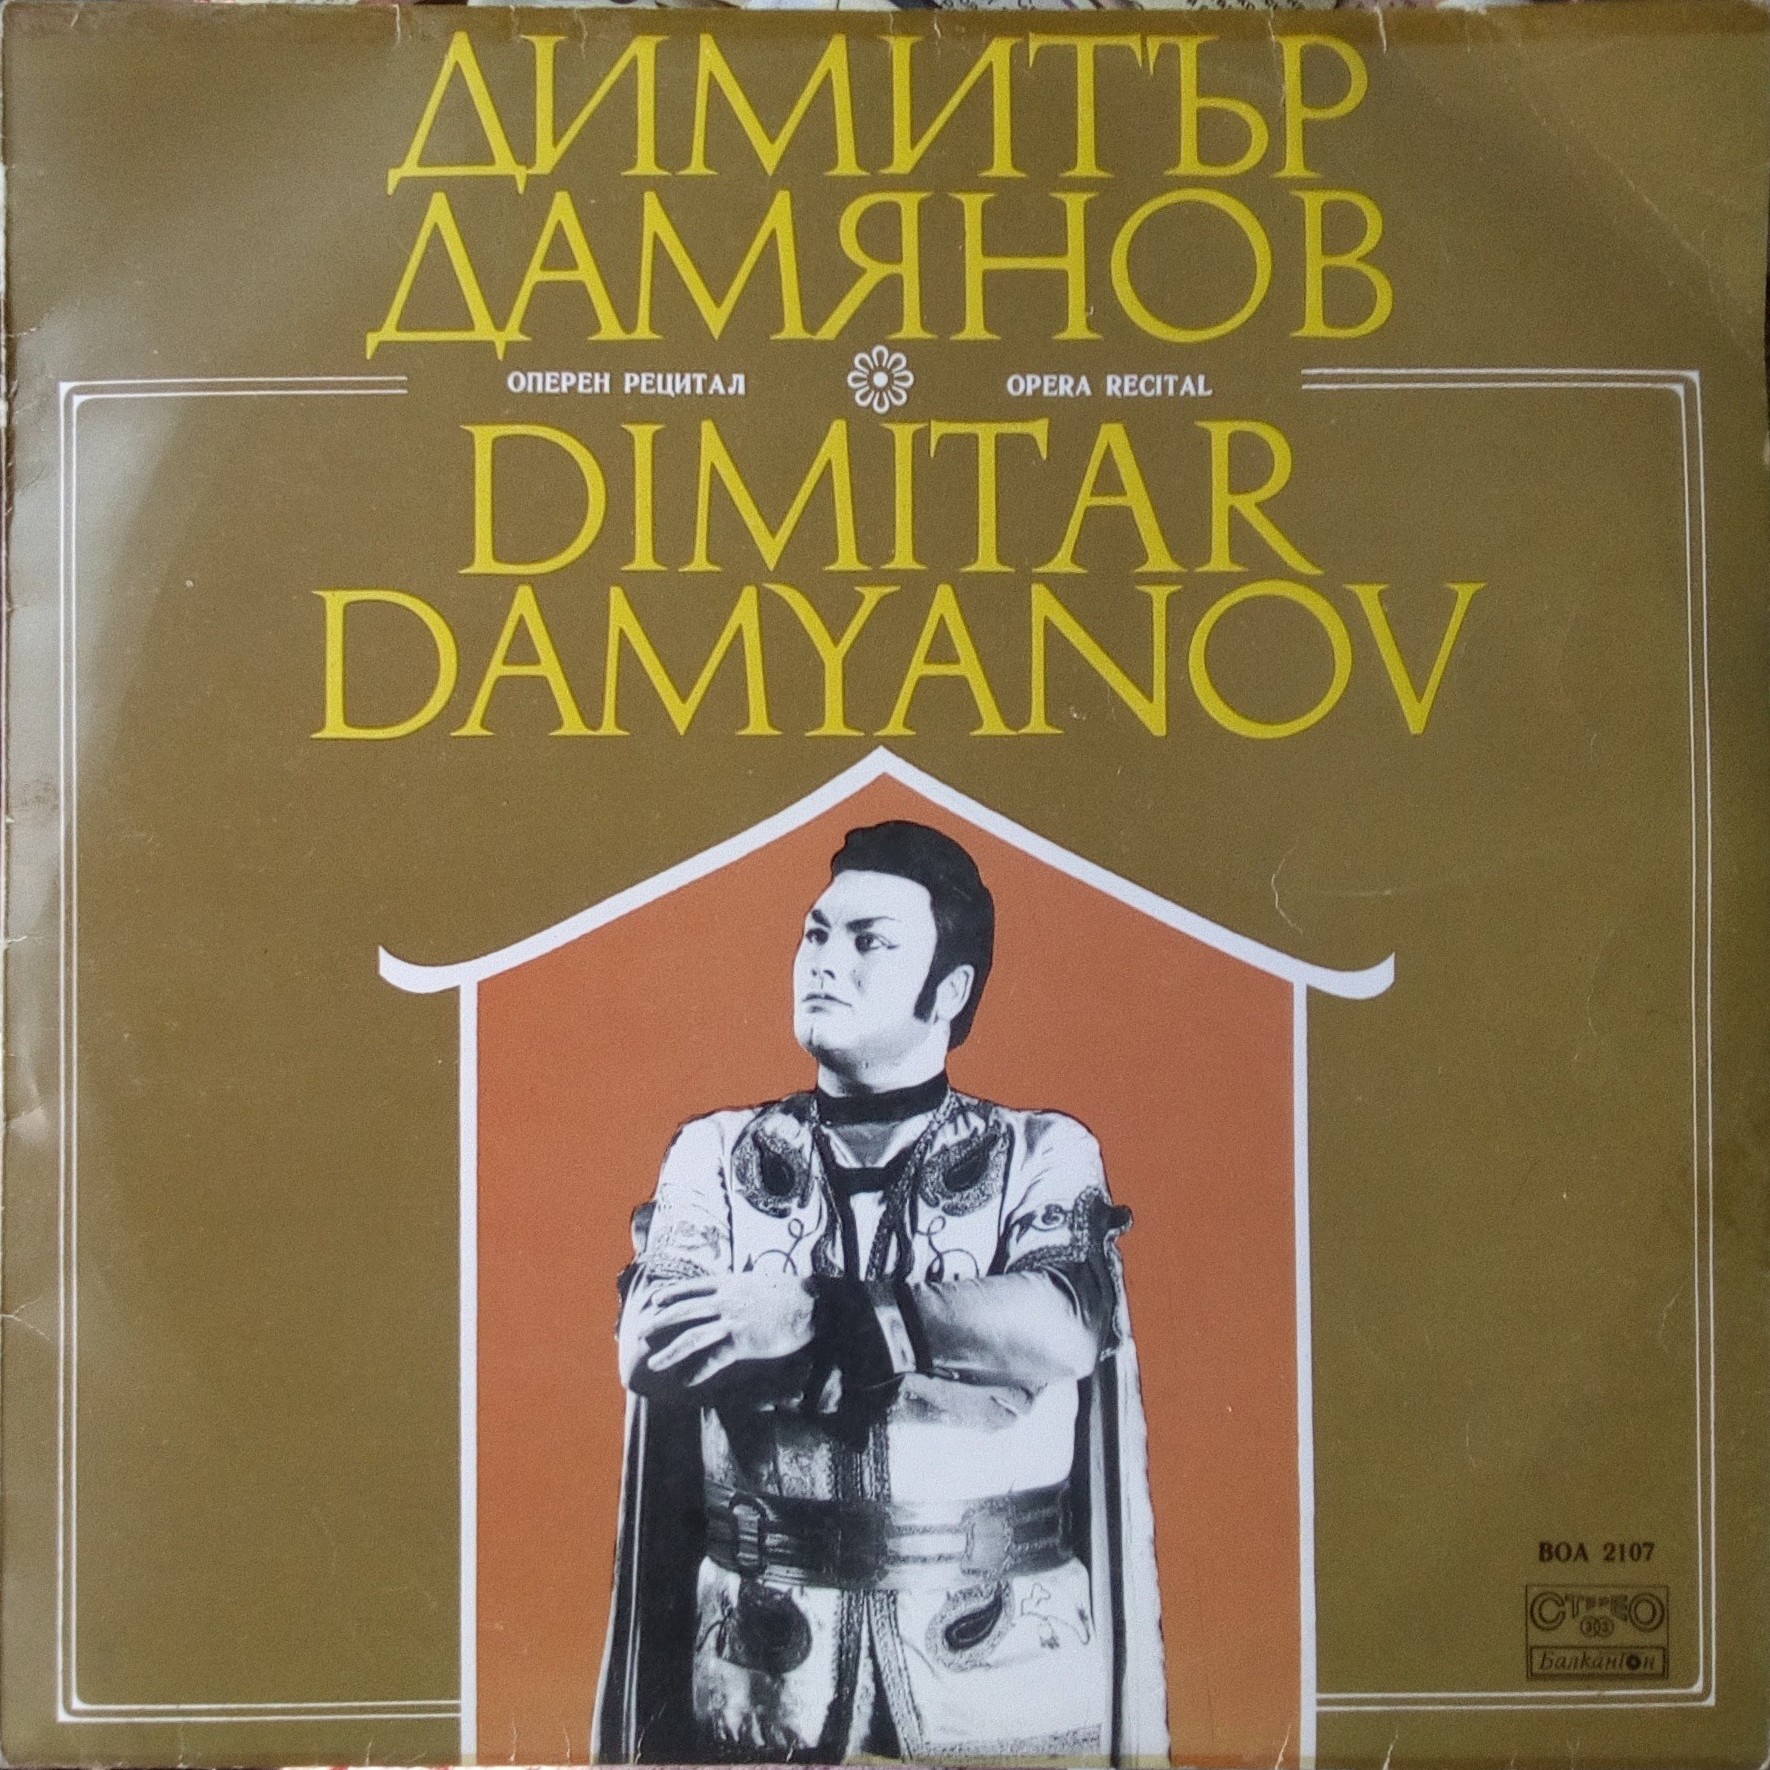 Оперен рецитал на Димитър Дамянов